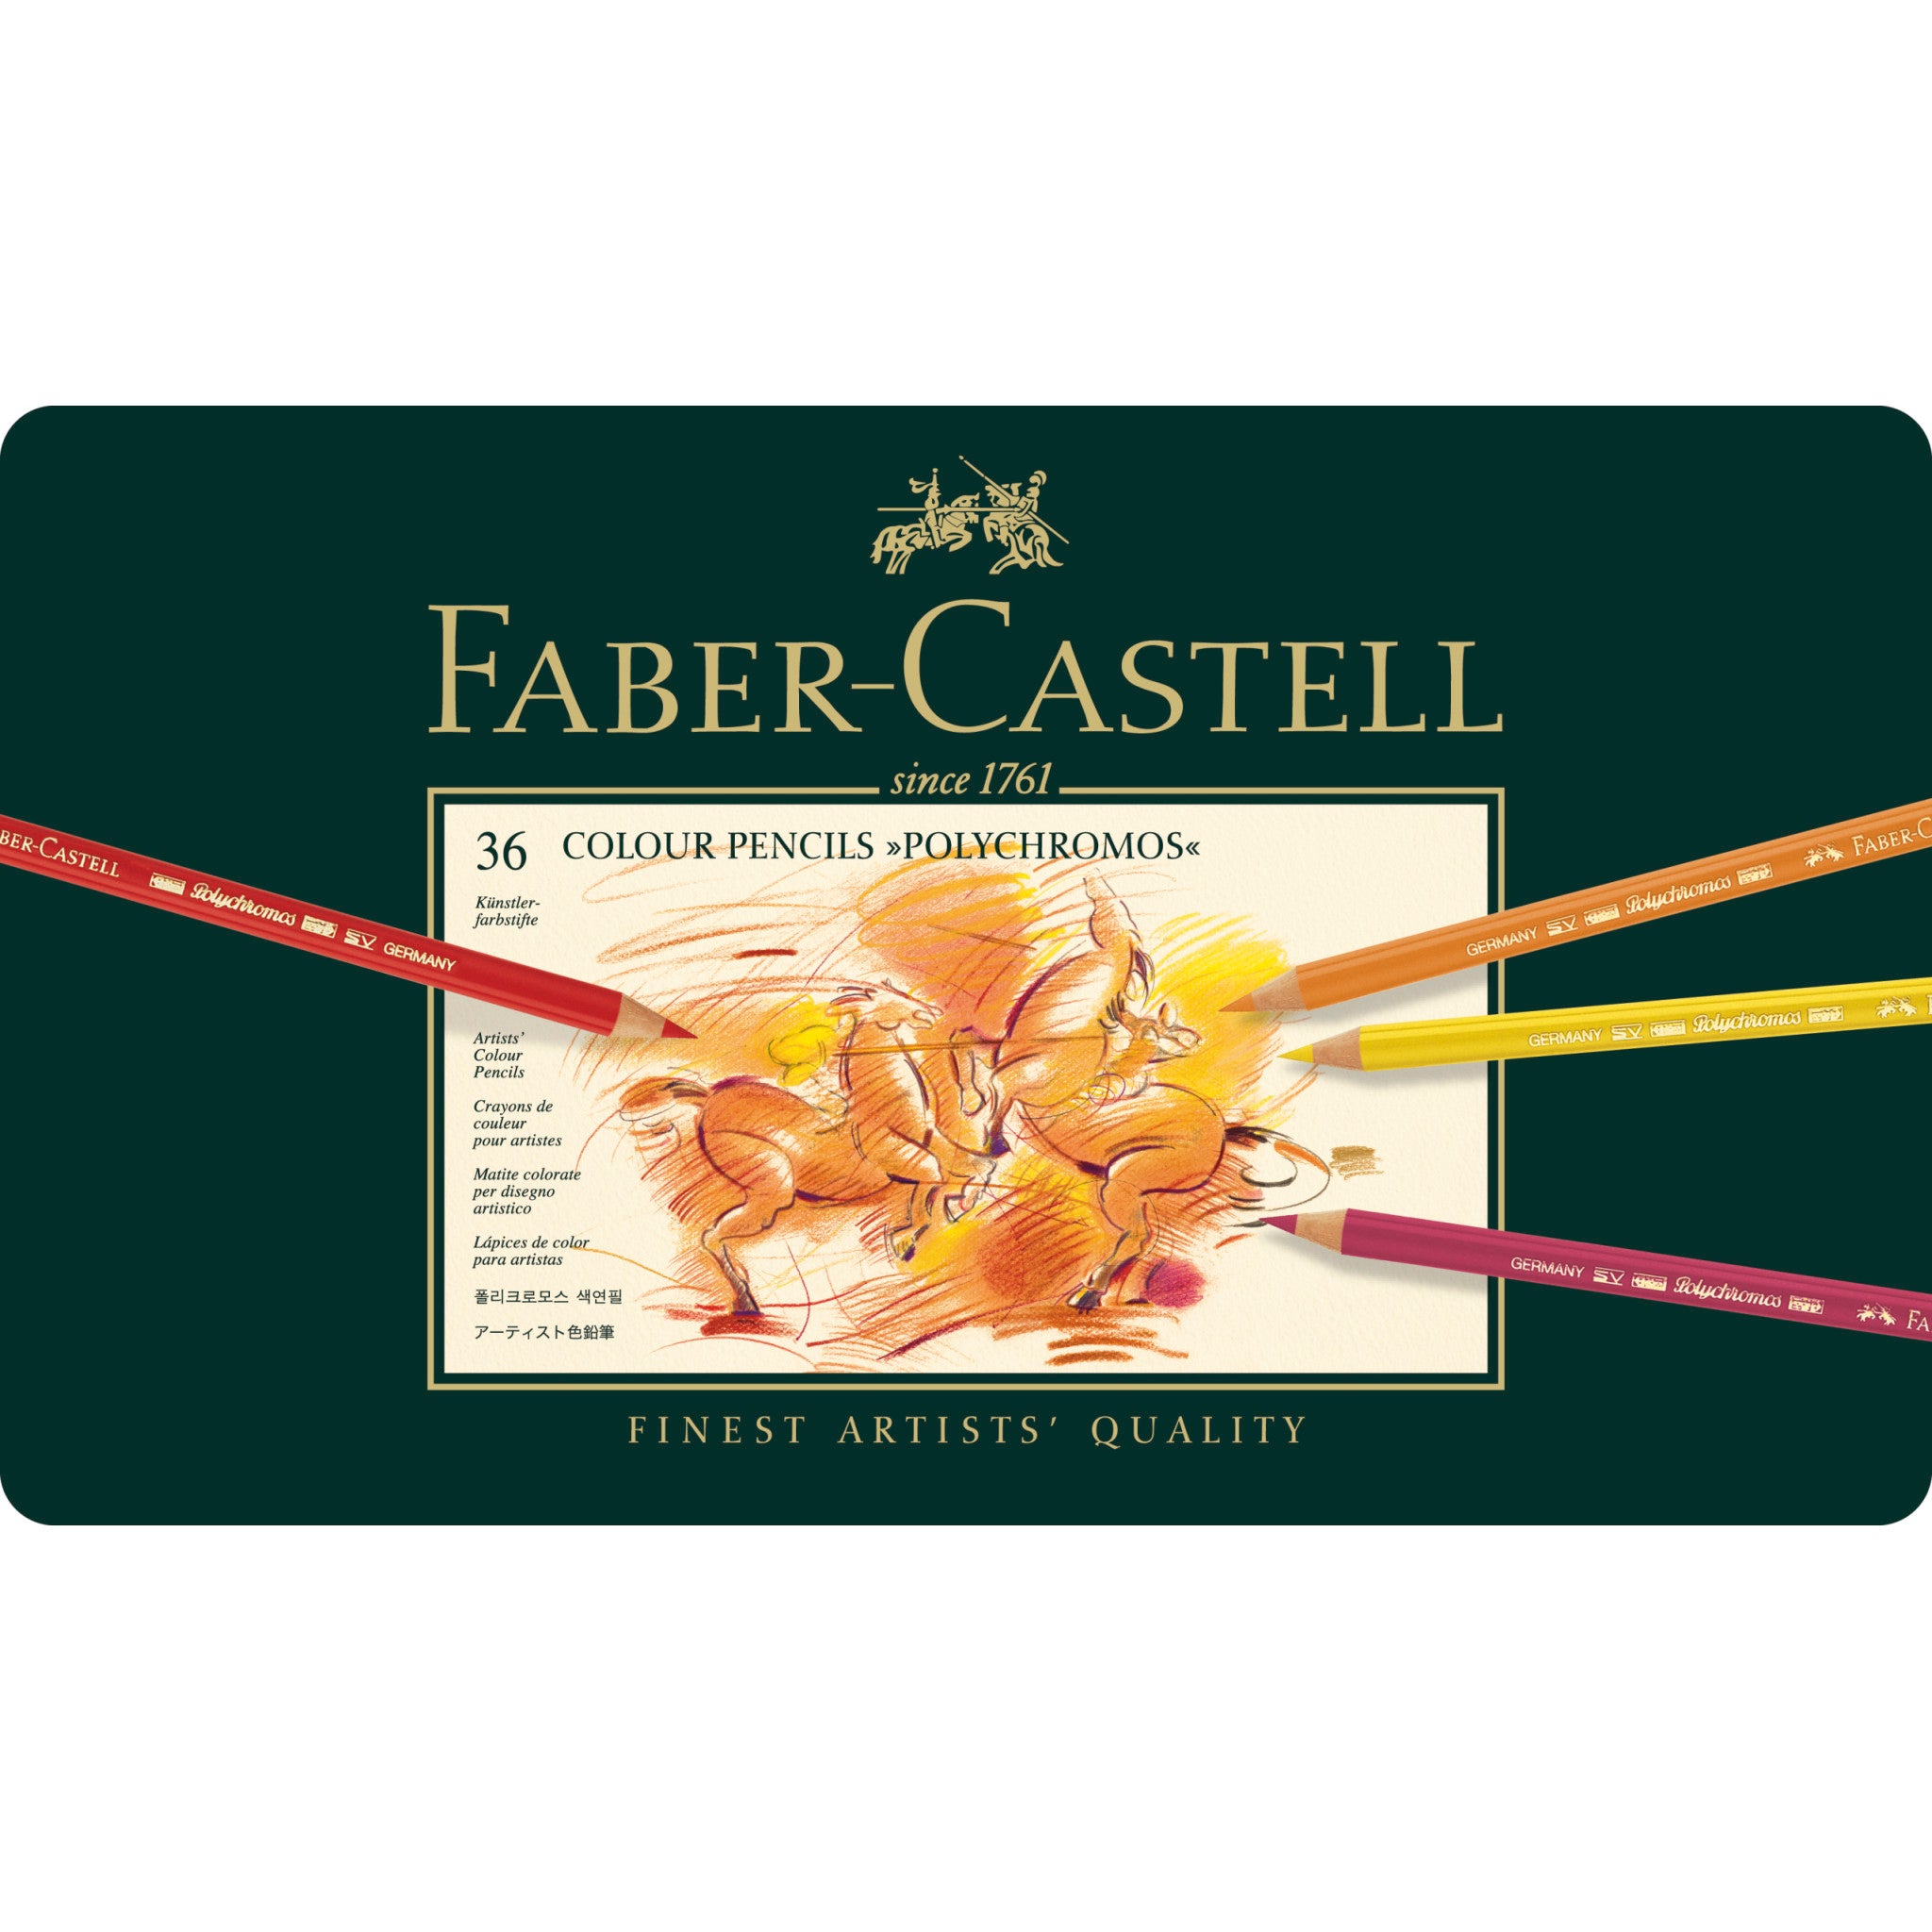 Faber Castell - Crayon de couleur - Polychromos - 36 pcs